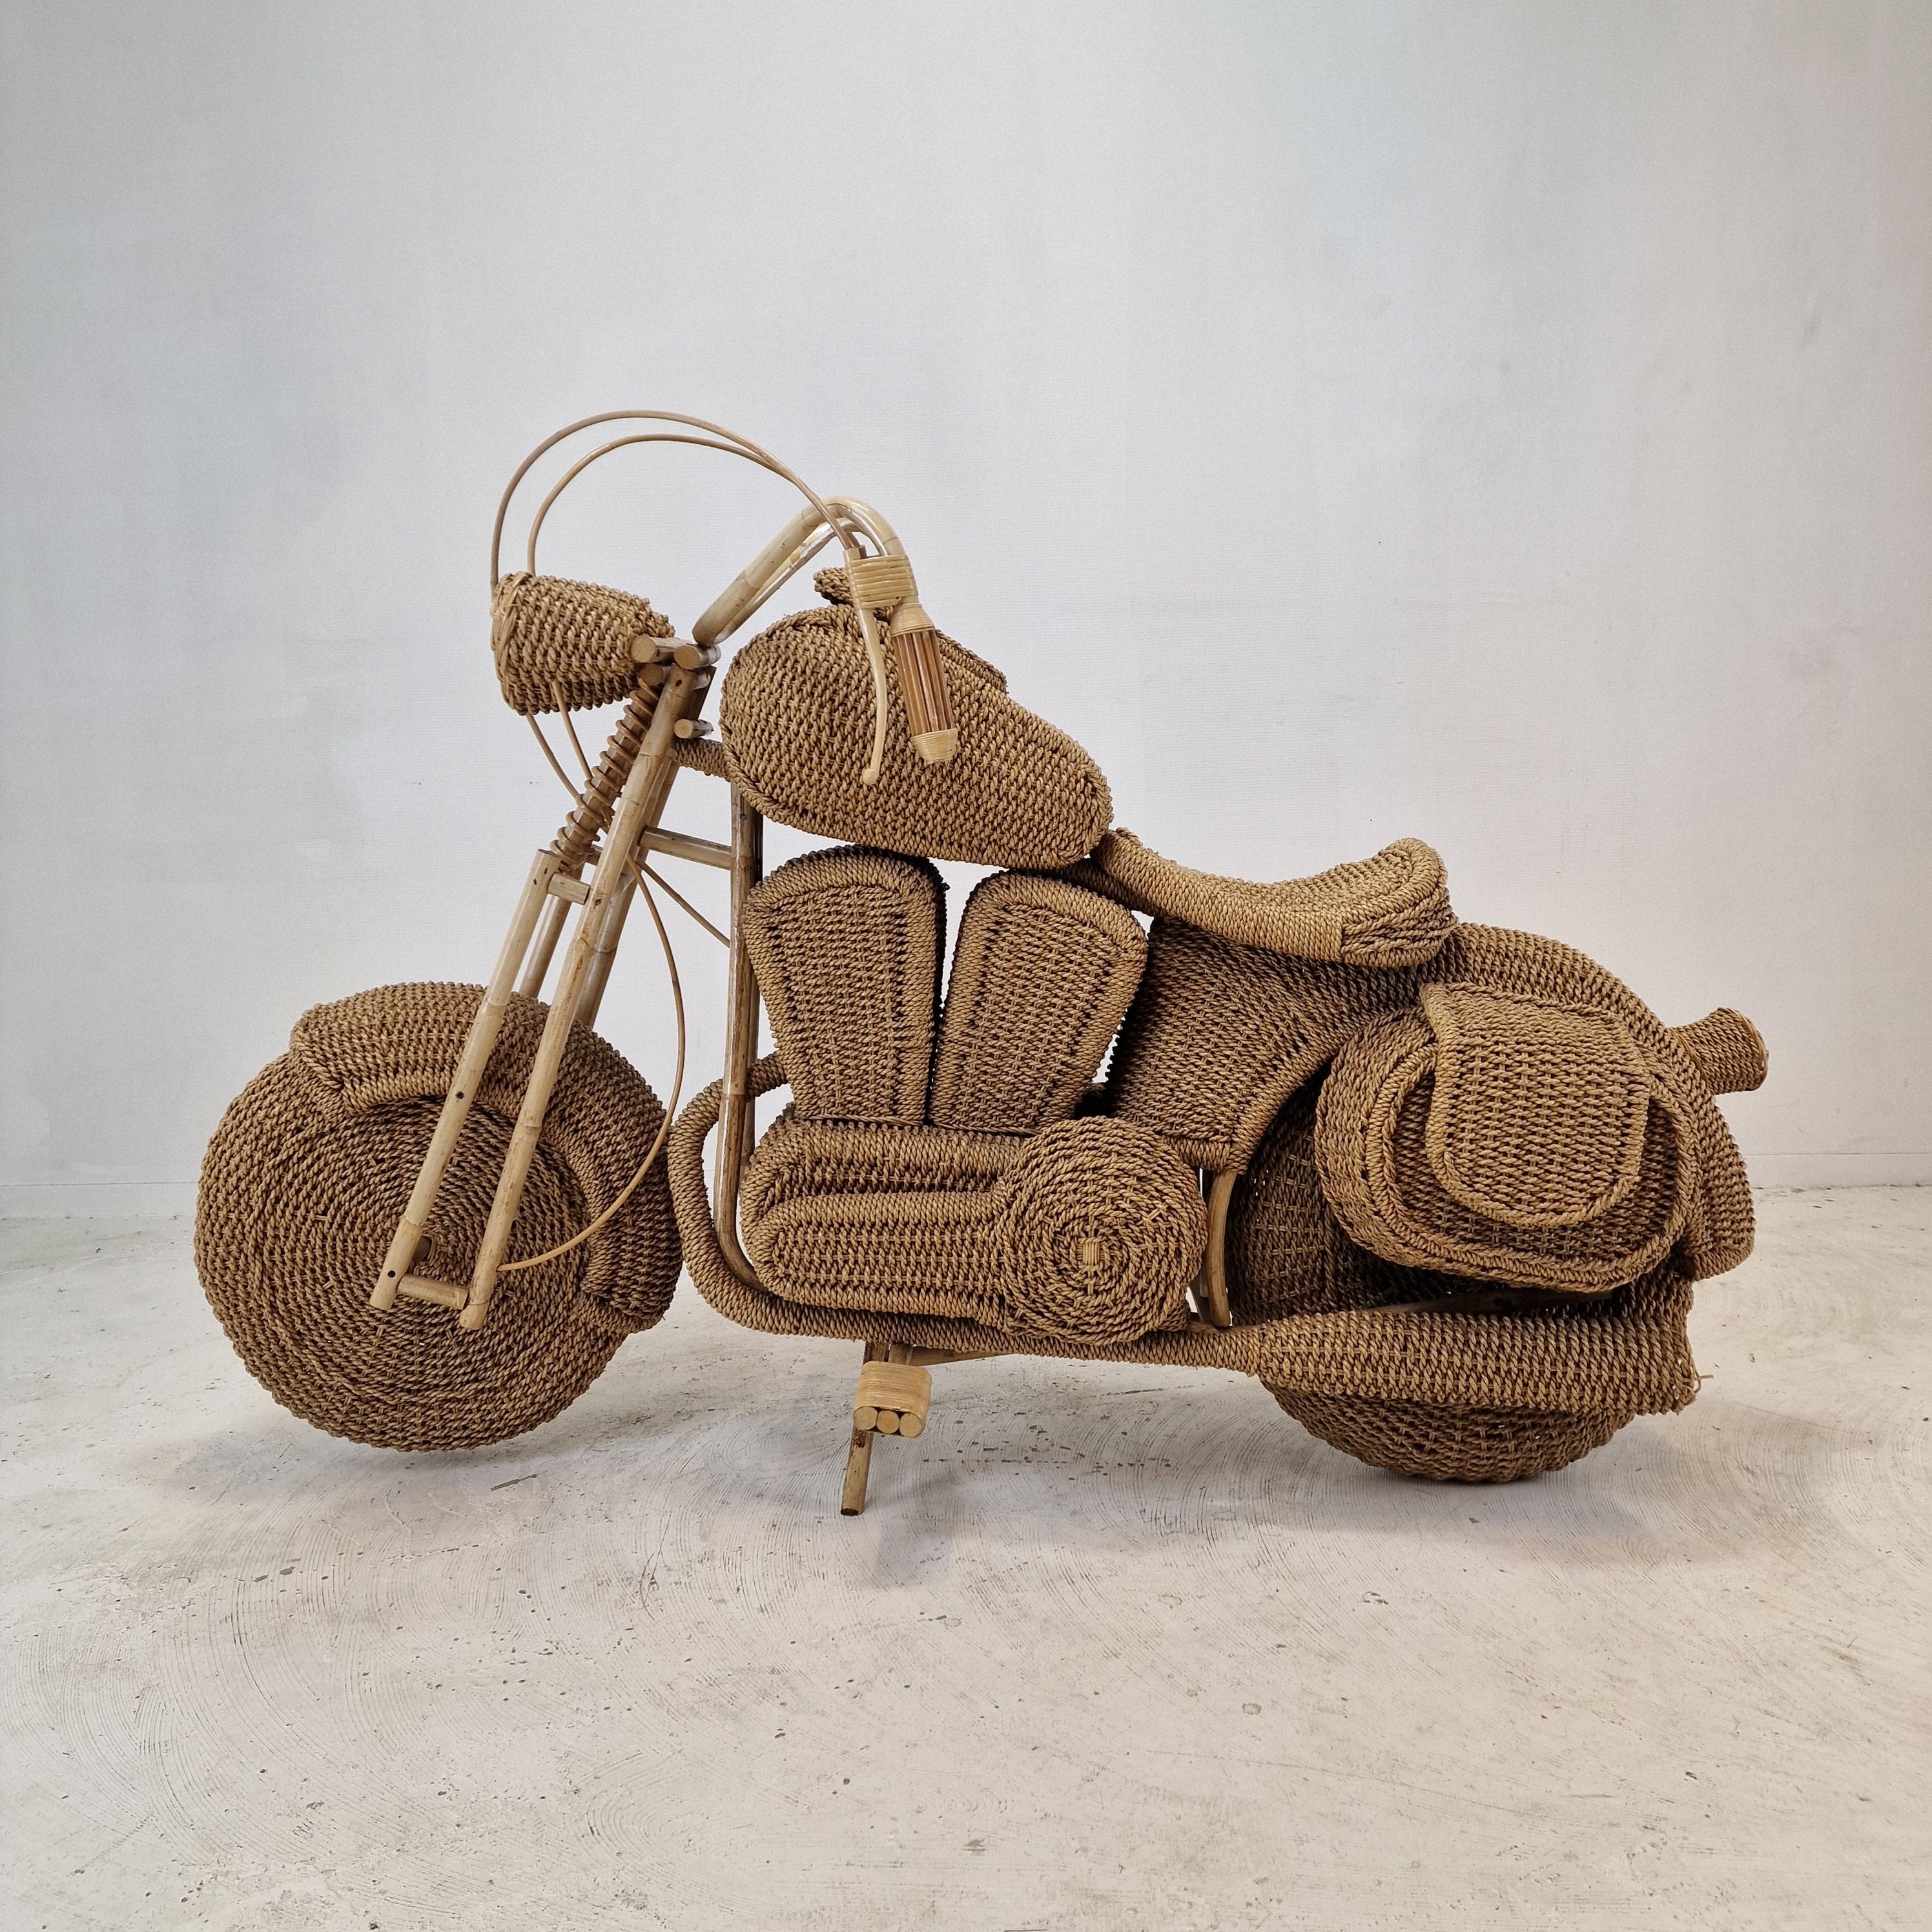 Modèle de moto en rotin Harley Davidson grandeur nature, attribué à Tom Dixon USA, Circa 1980  

Sculpture artisanale d'une moto en rotin tressé, saule, roseau et bois. 

Ce modèle aurait été utilisé comme présentoir dans les magasins Habitat dans